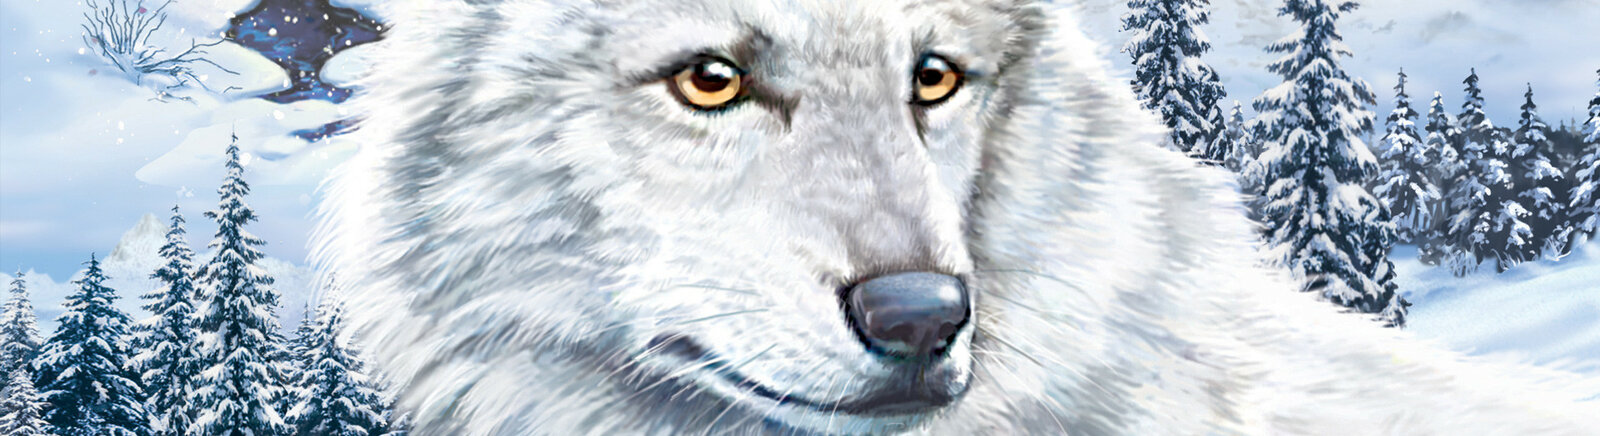 Дата выхода Nancy Drew: The White Wolf of Icicle Creek (Nancy Drew 16)  на PC и Wii в России и во всем мире